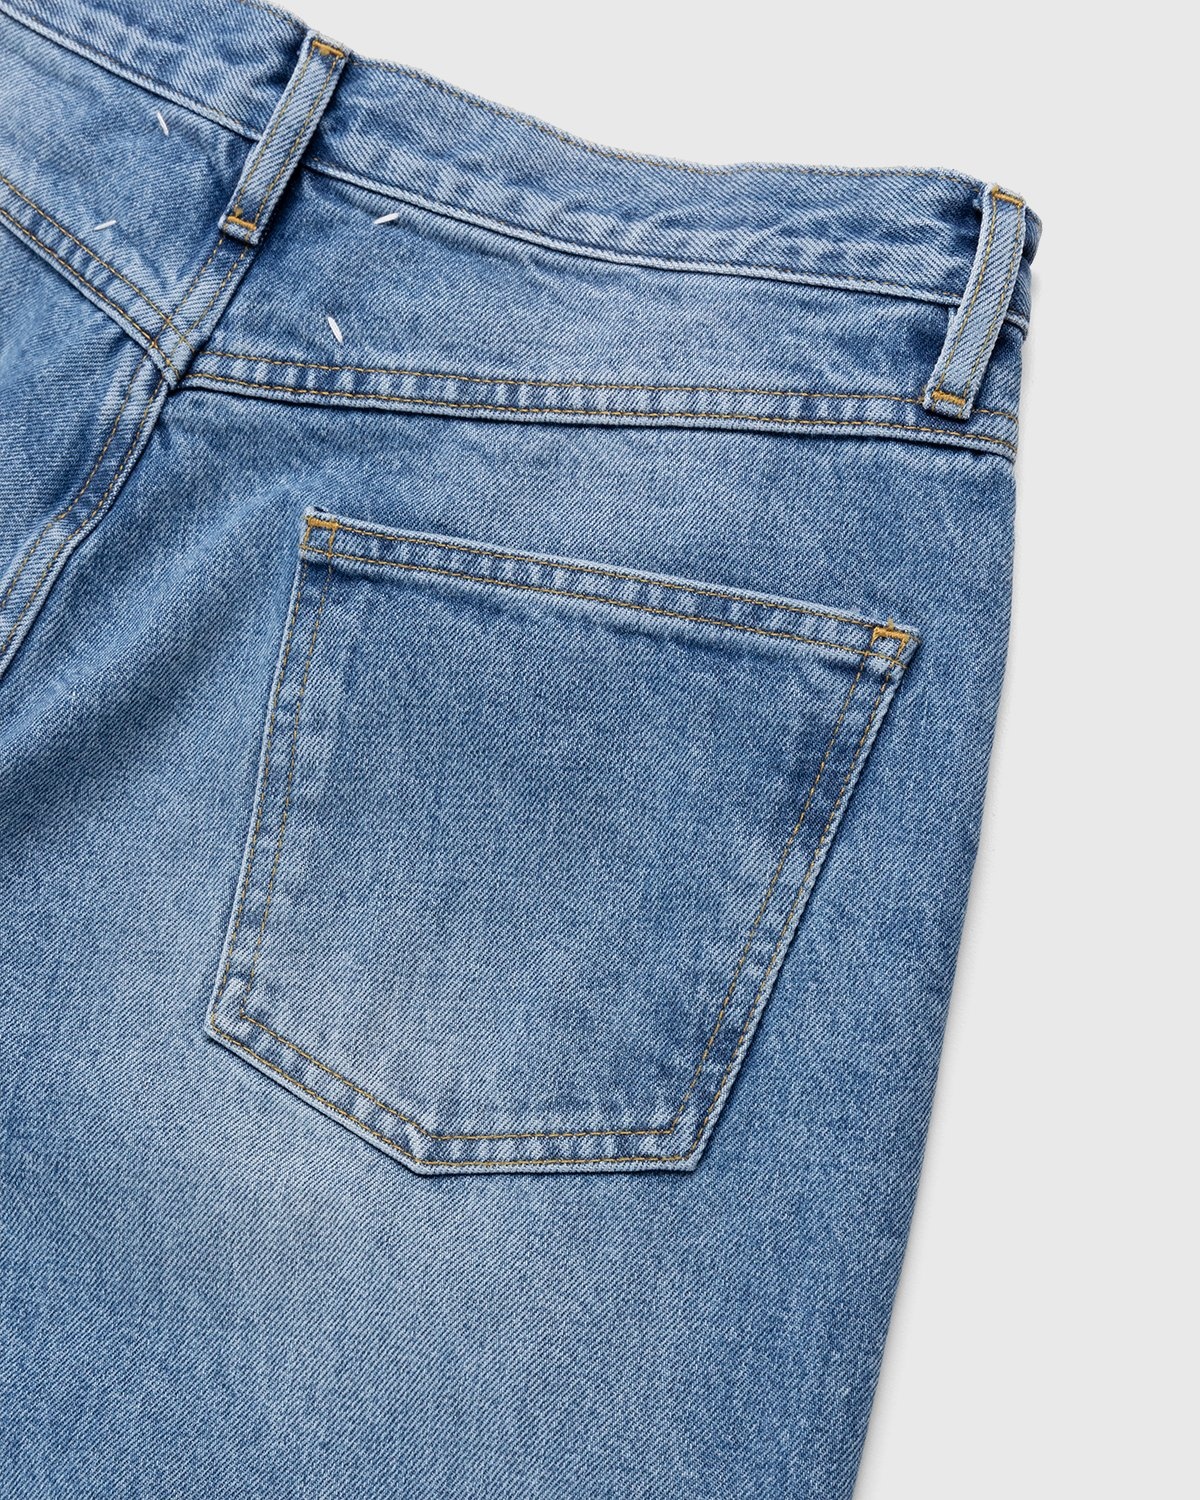 Maison Margiela – Five-Pocket Jeans Blue - Pants - Blue - Image 5